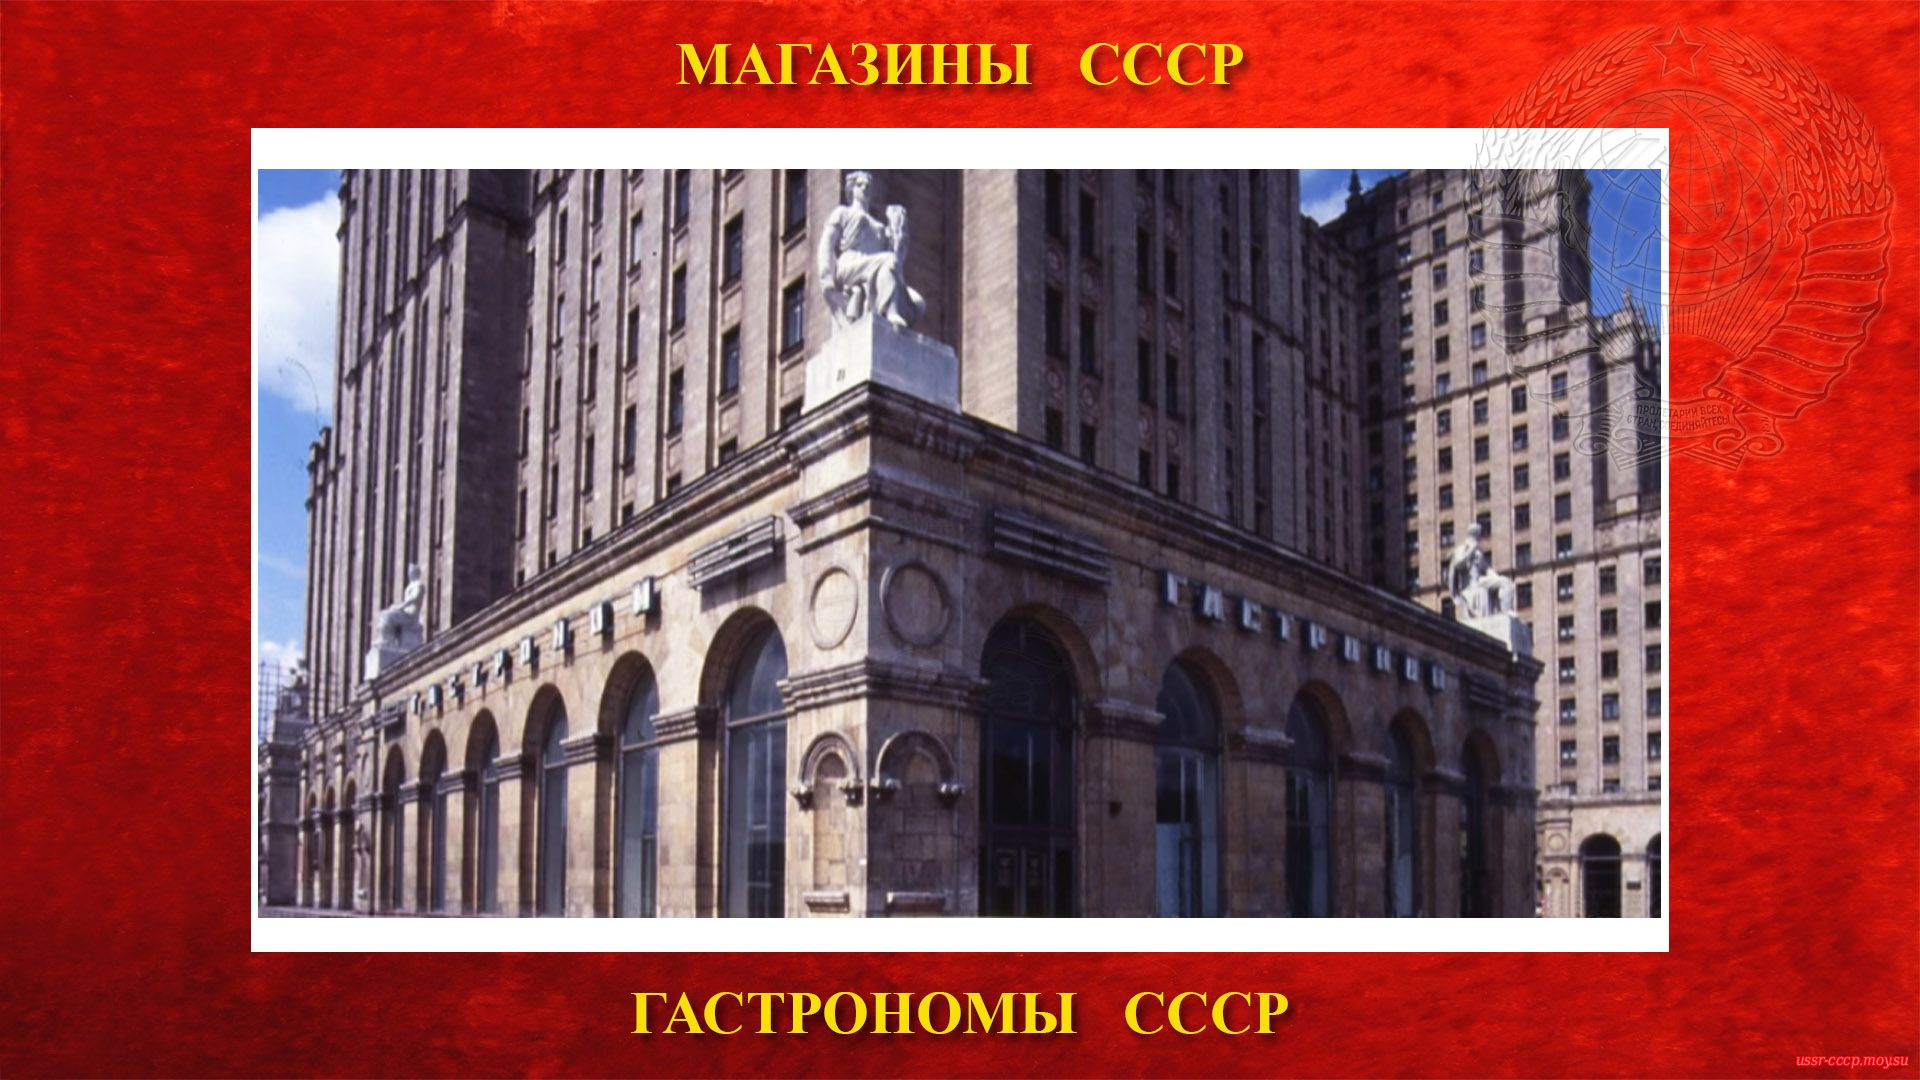 Гастроном № 15 — На площади Восстания в Москве — Самый большой продовольственный магазин СССР